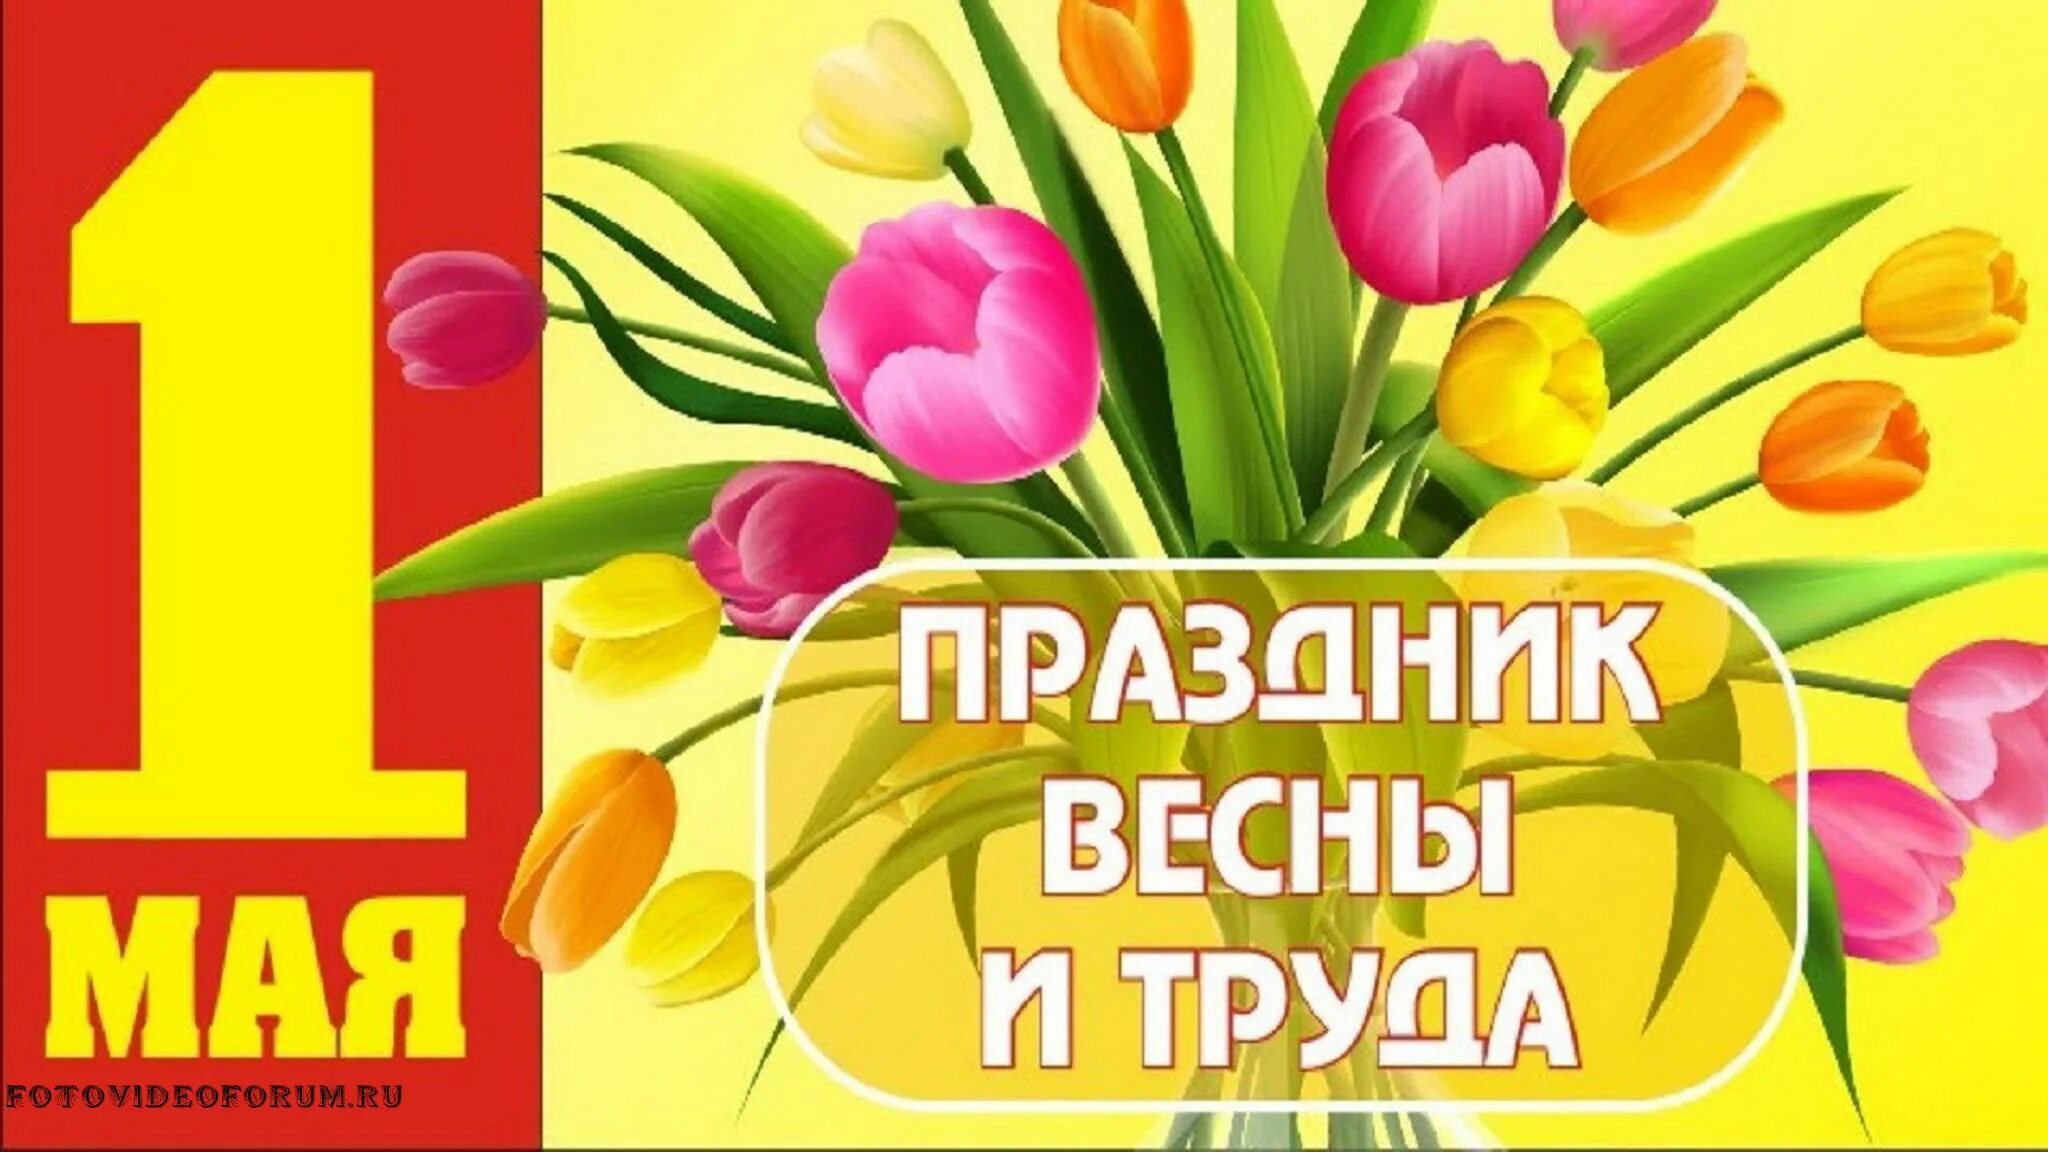 Поздравление с 1 мая. Открытки с 1 мая. 1 Мая праздник весны и труда. Поздравления с первым мая. 1 мая содержание